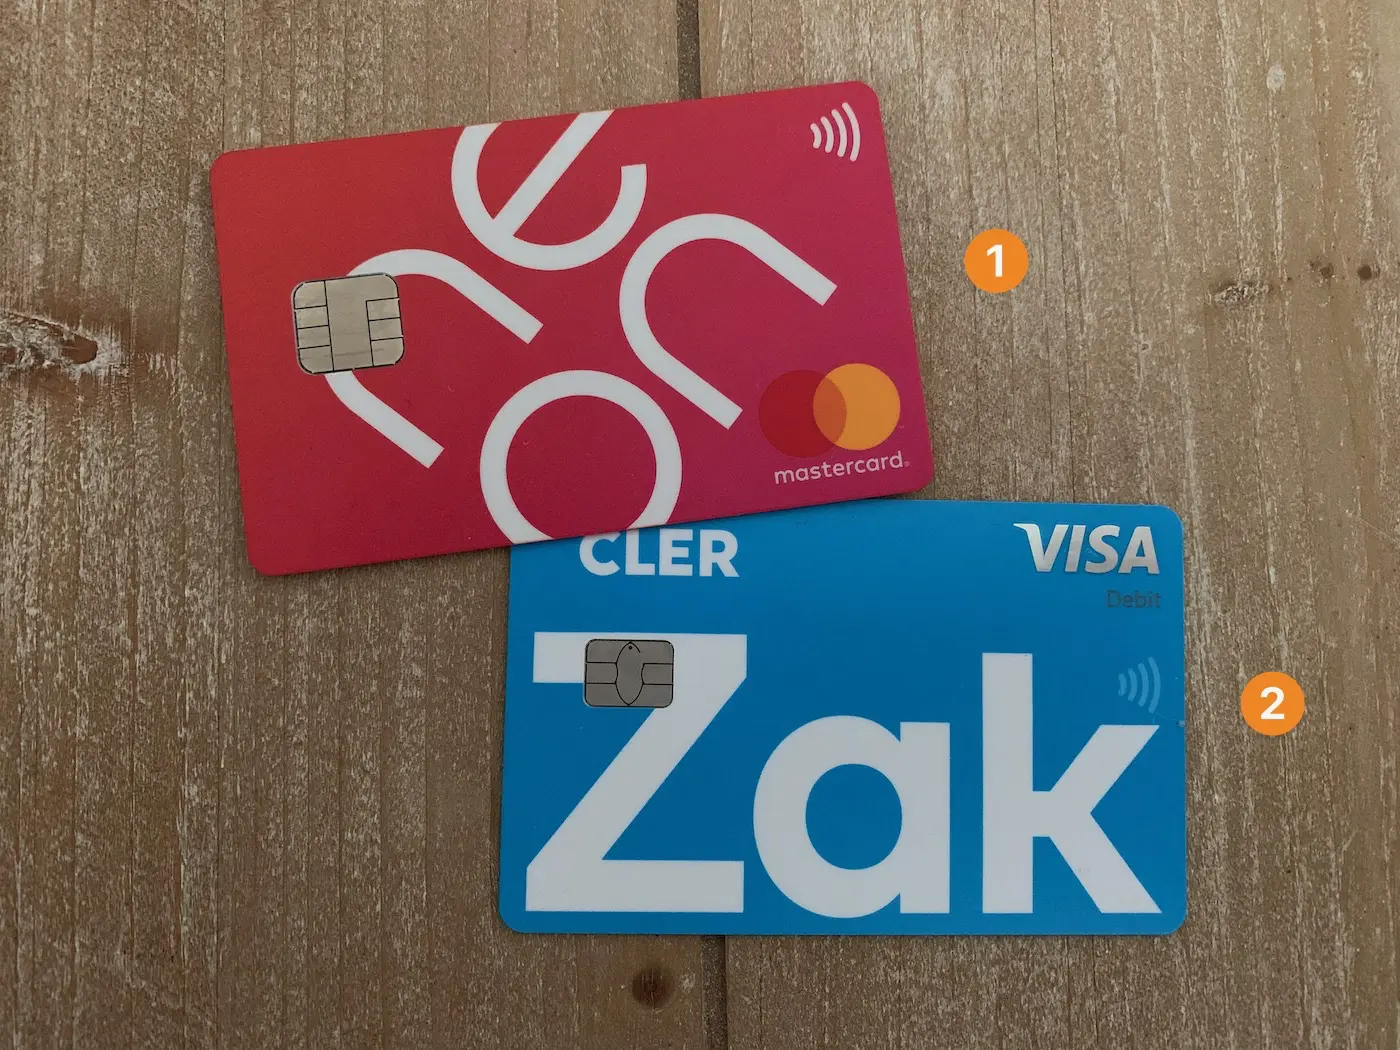 Beste Schweizer Online-Banken laut MP für 2022: neon (Hauptbank) und Zak (Nebenbank)